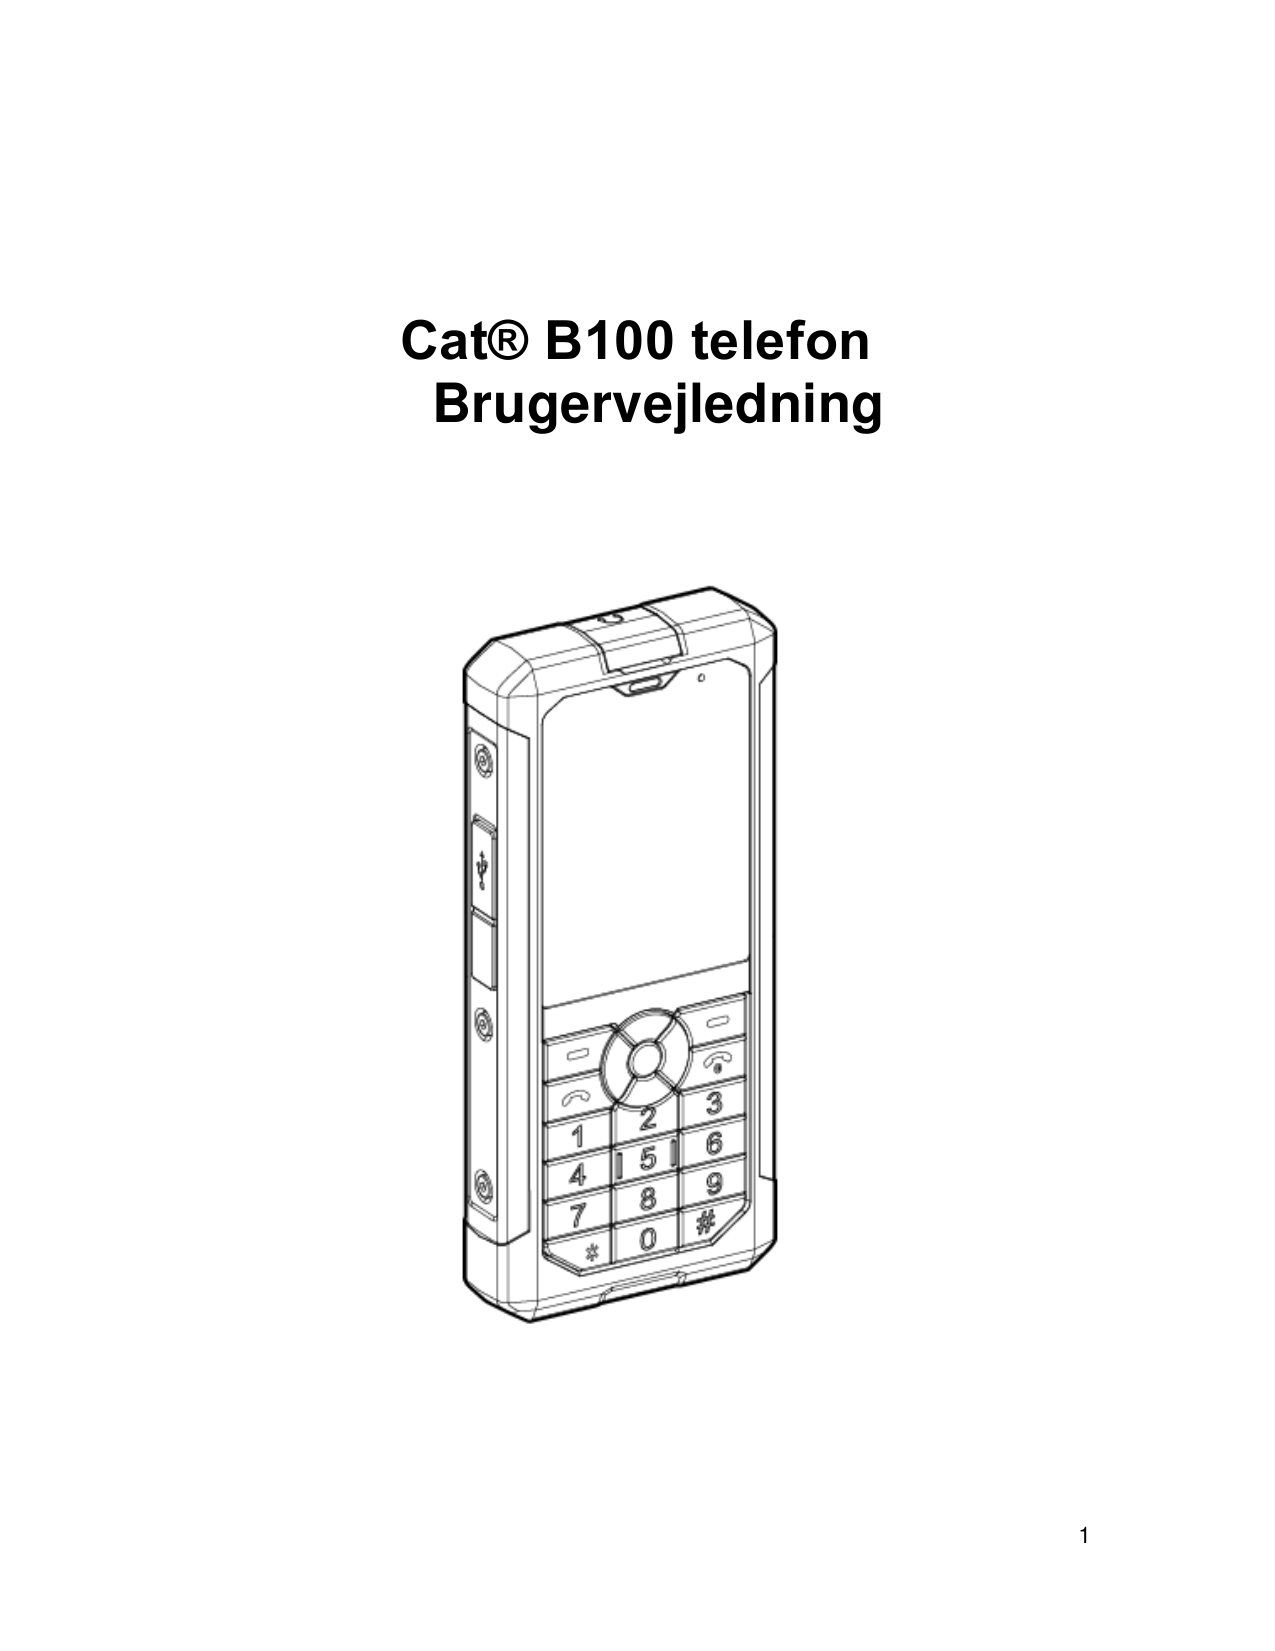 Cat® B100 telefonBrugervejledning1